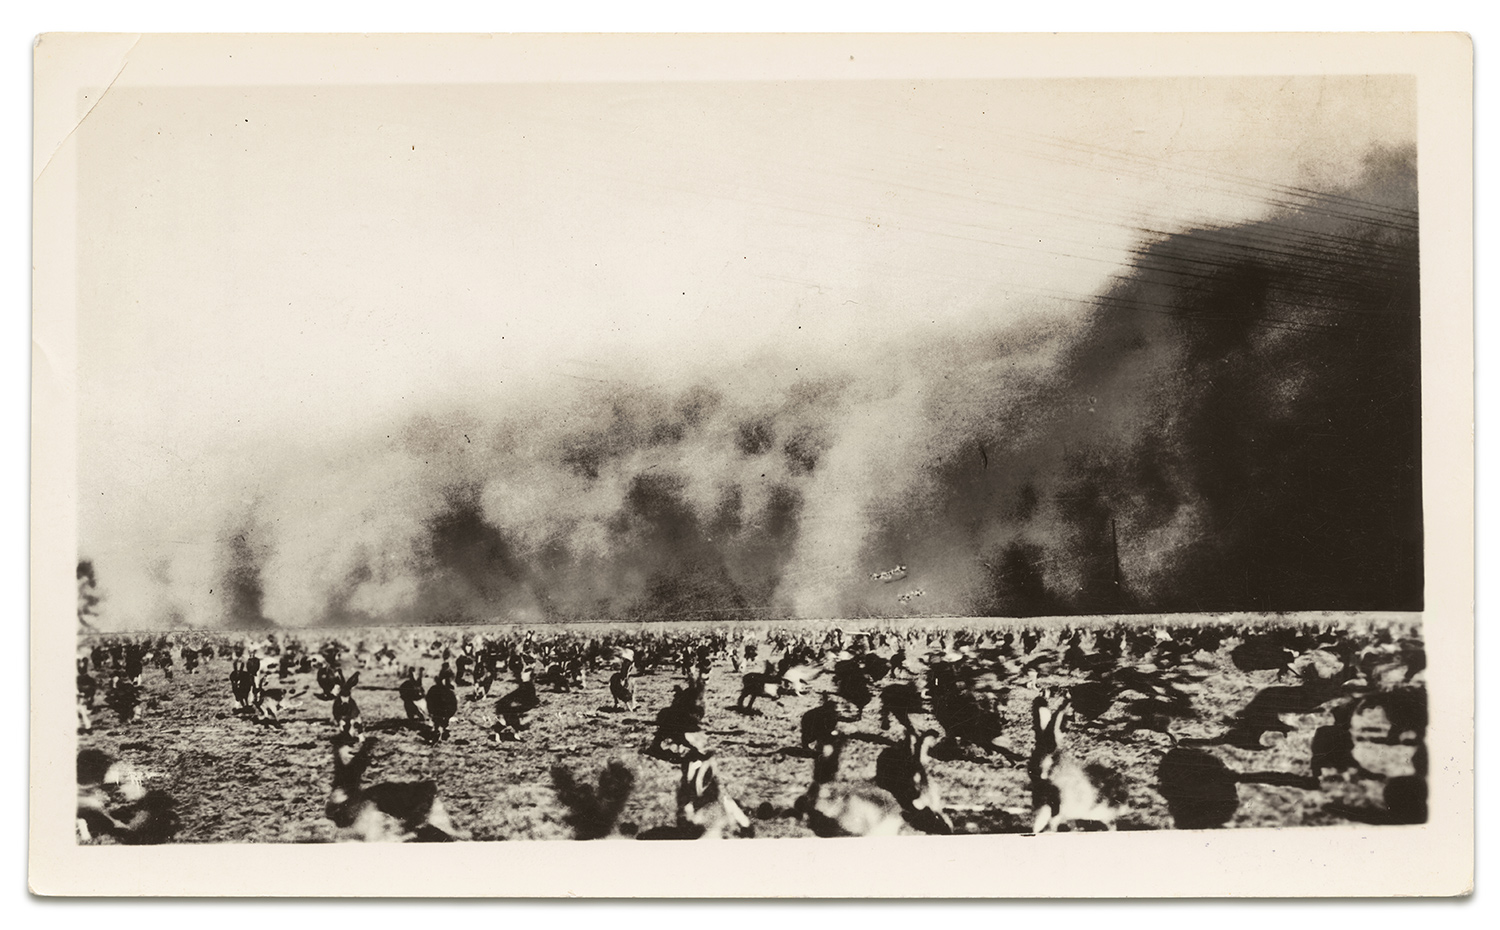 1930s dust storm